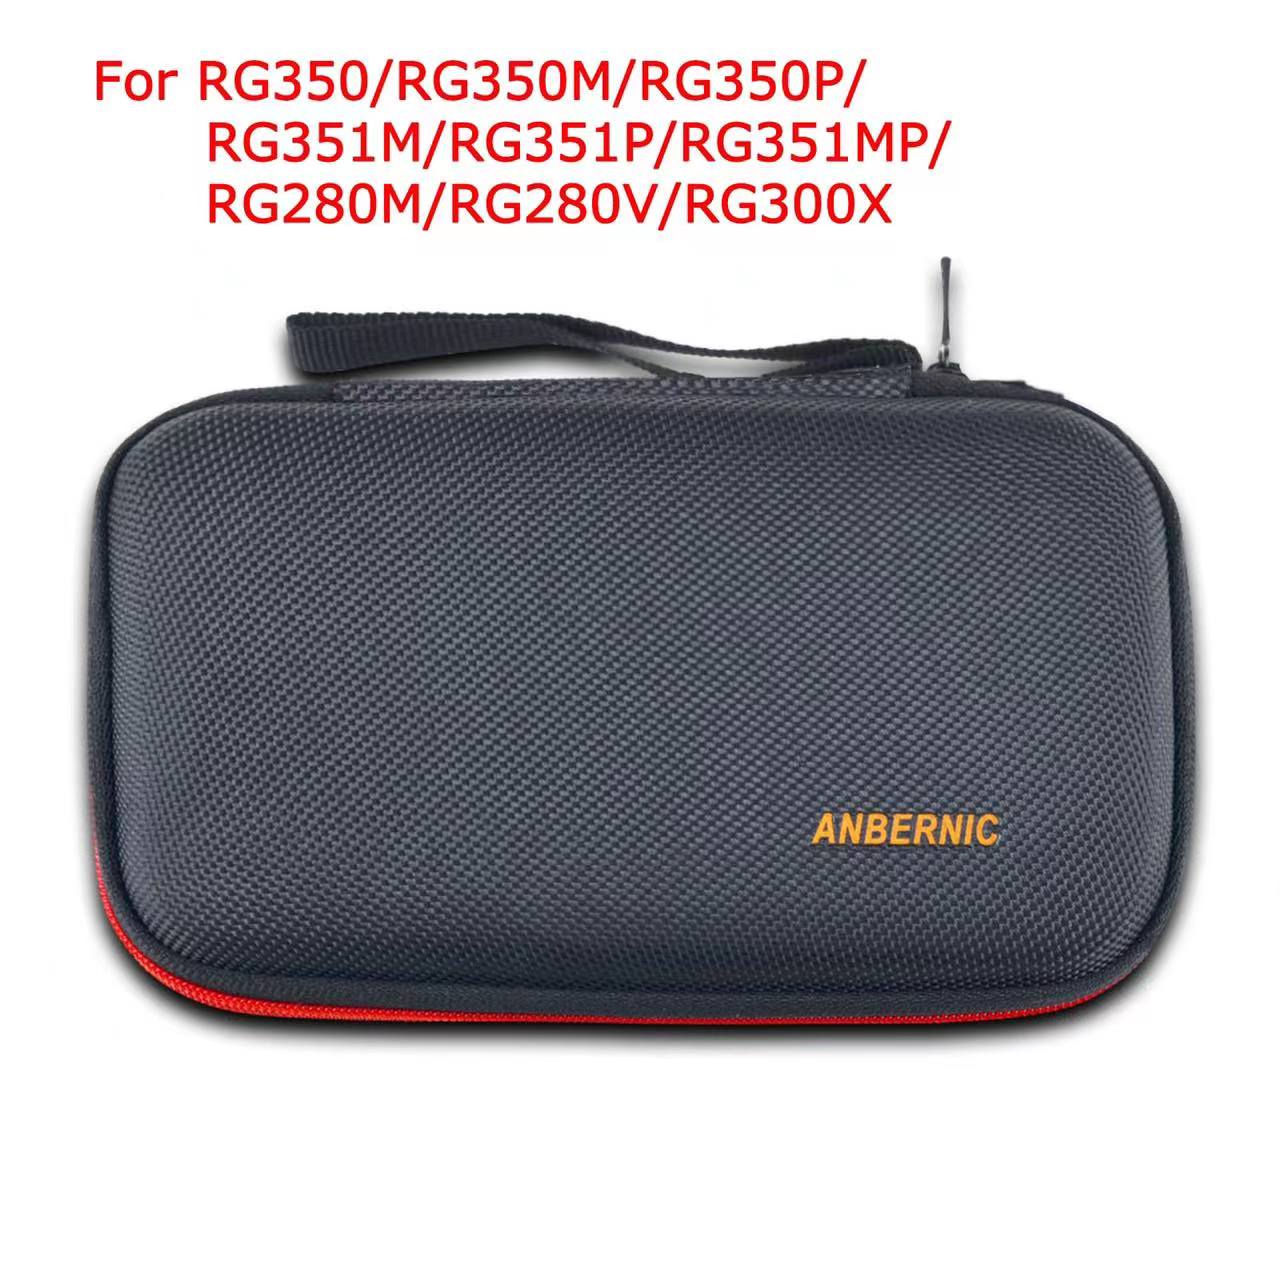 ANBERNIC RG350/RG350M/RG350P Bolsa de protección y piezas para consola de juegos retro Reproductor de juegos RG351P BOLSA de consola de juegos retro portátil y piezas enviadas desde china